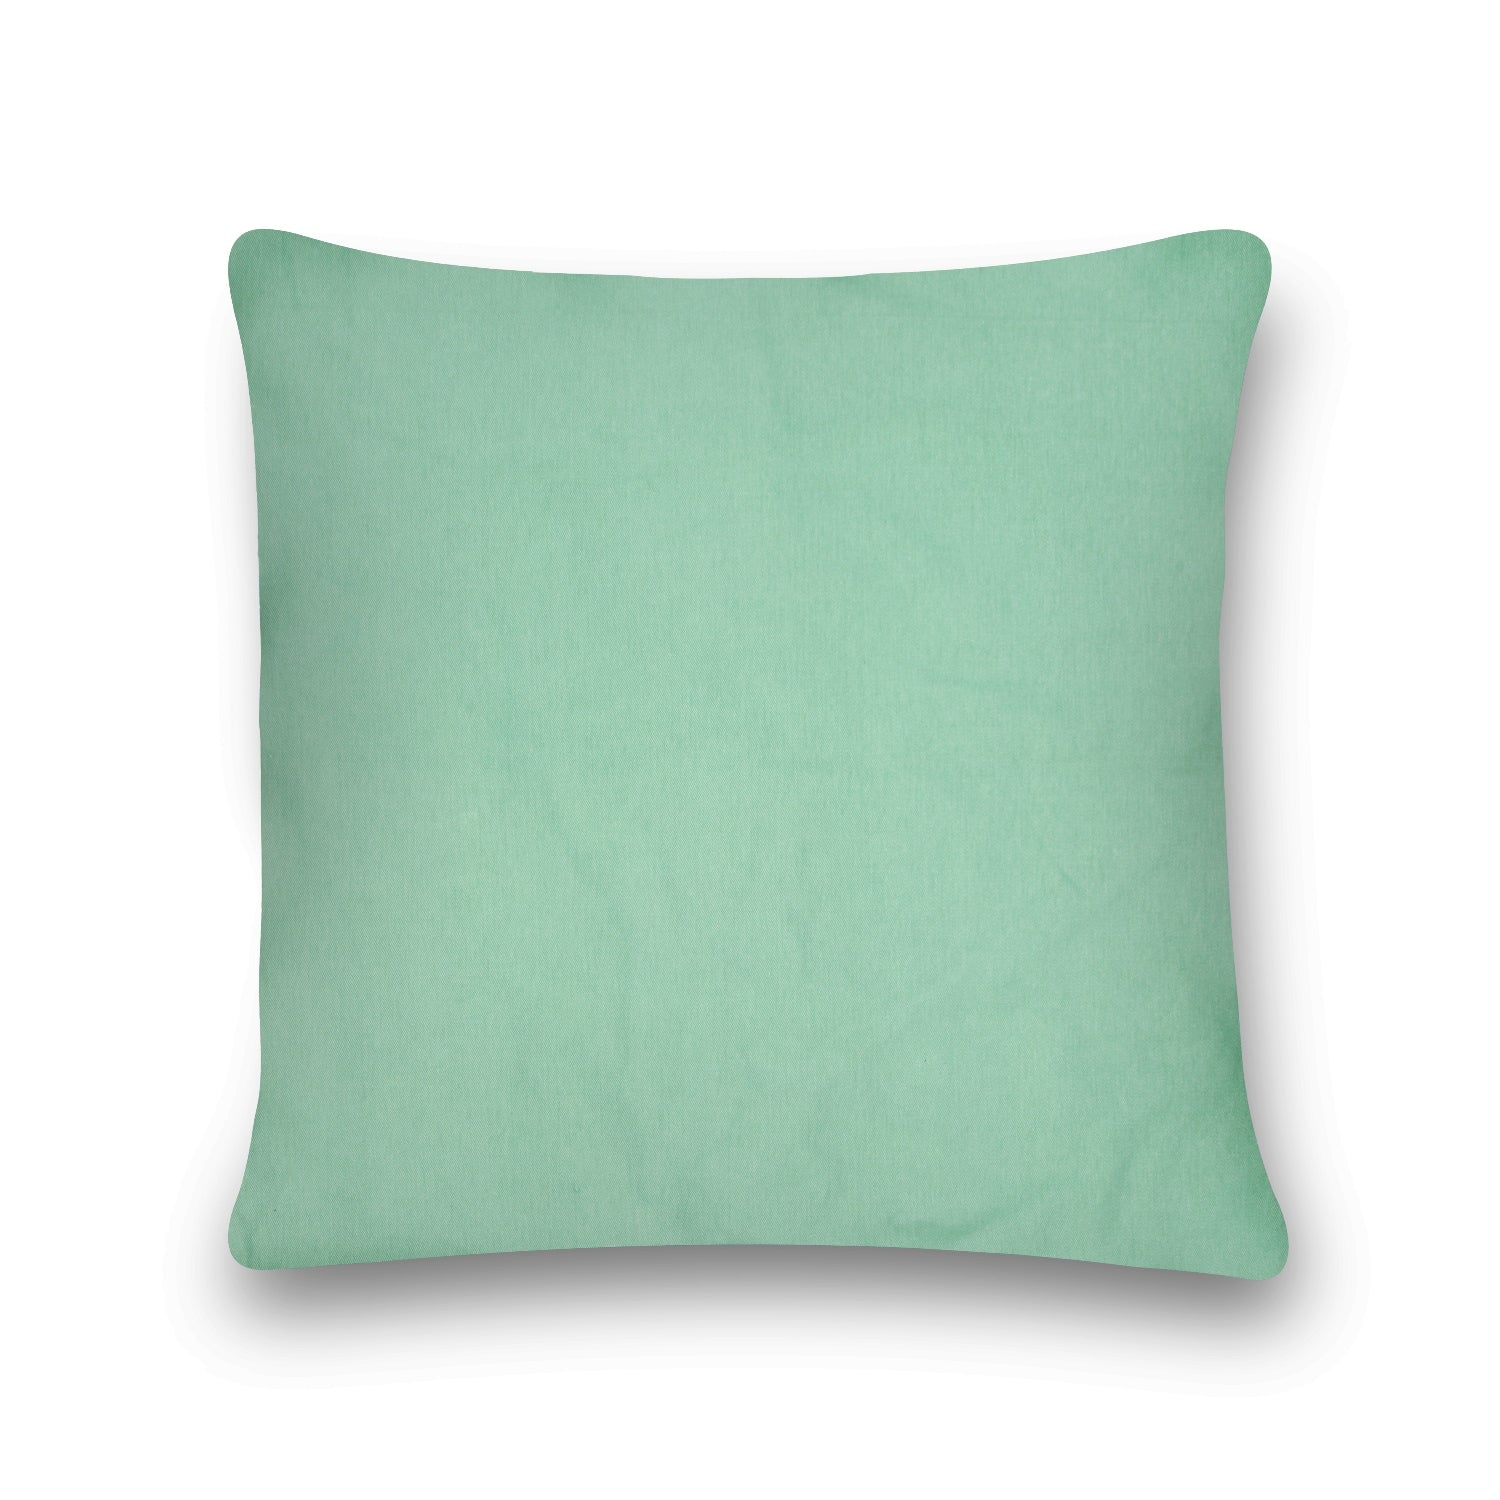 'Nature's Brushstrokes' 100% Cotton Velvet Cushion Cover